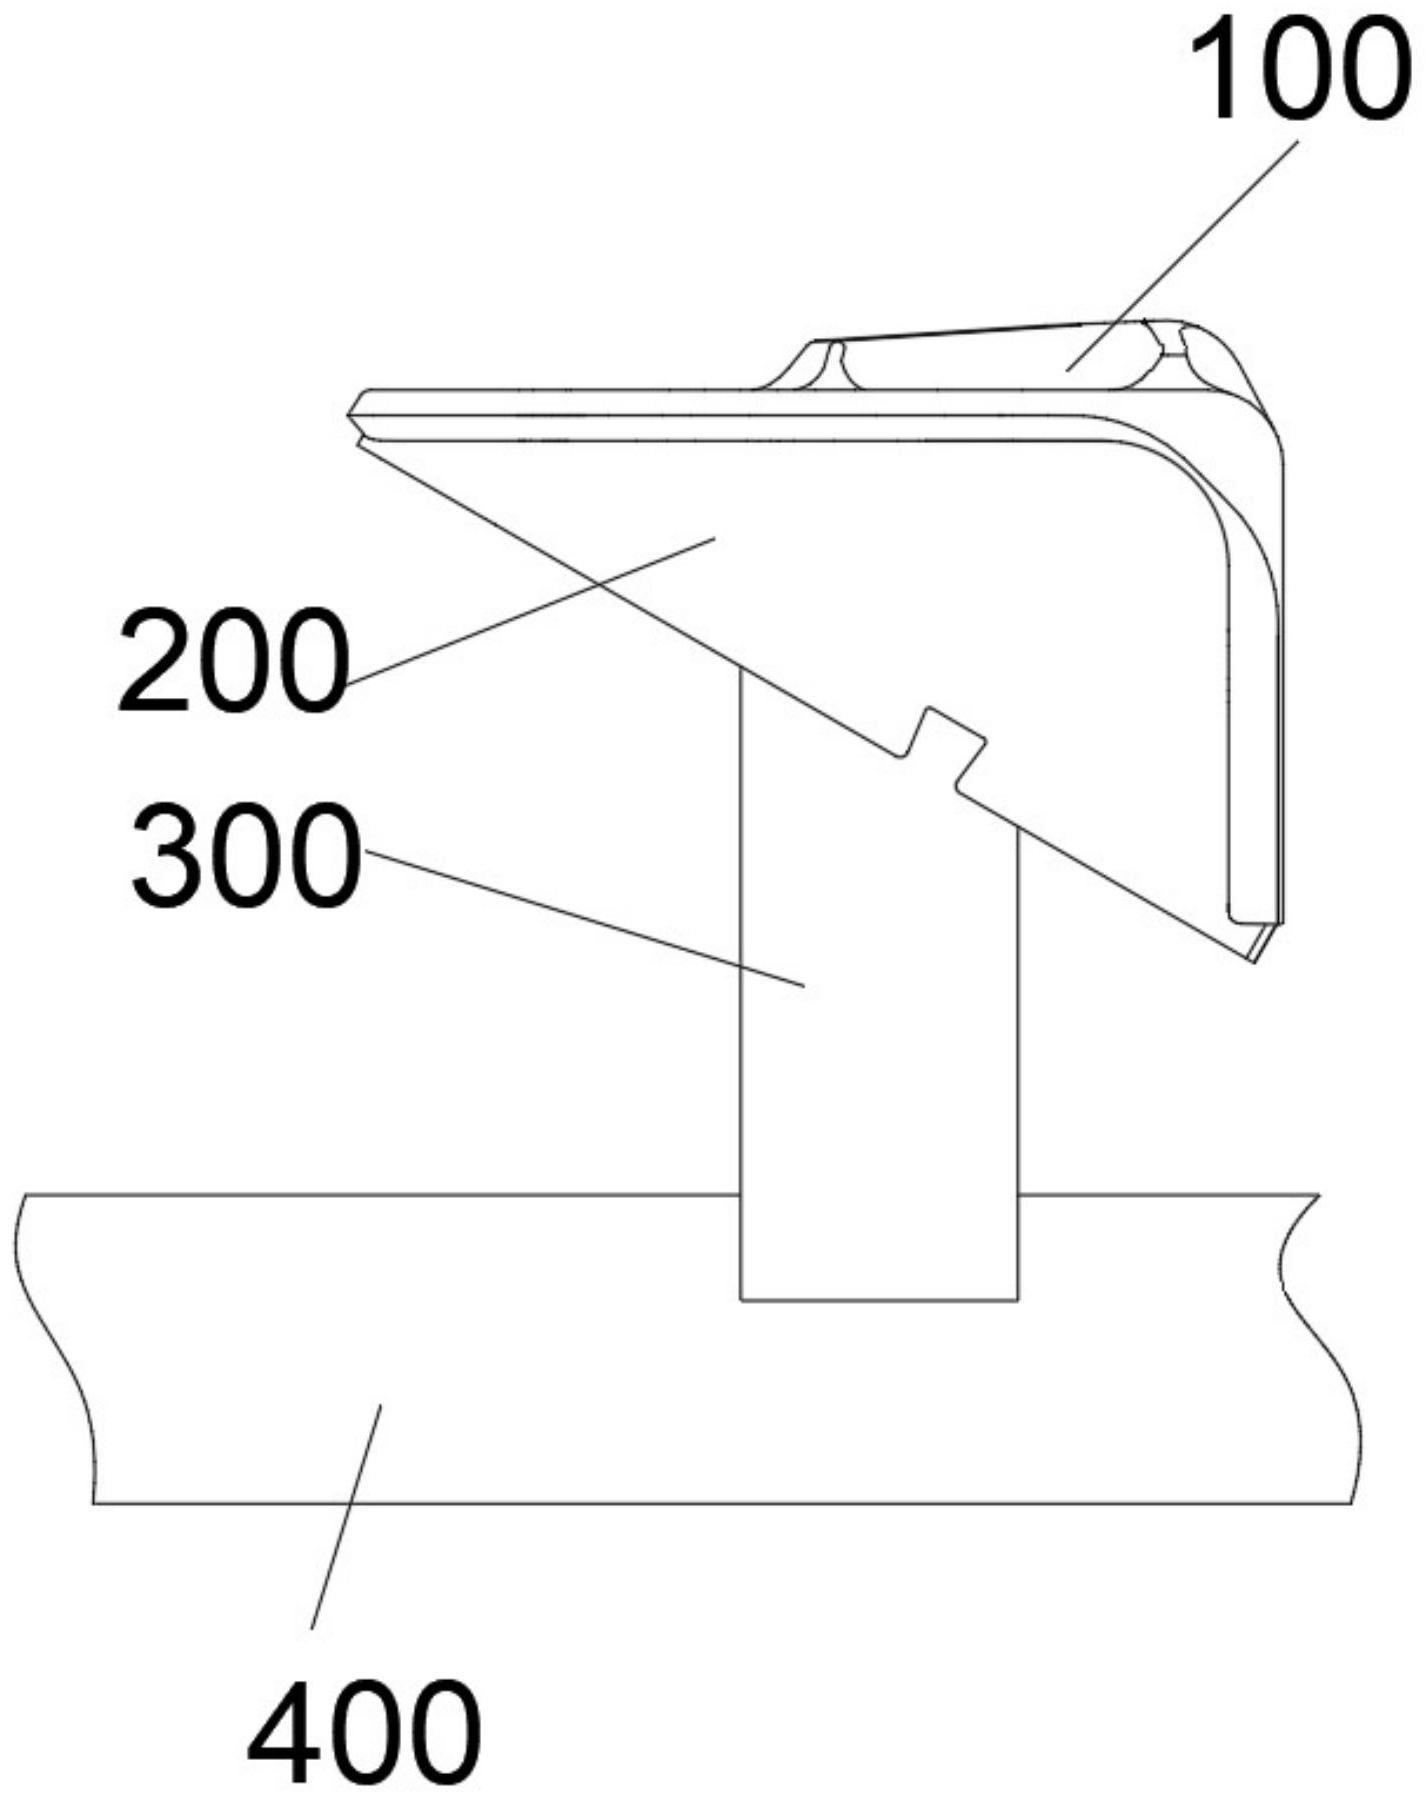 复杂形状锻件的激光切边工装及切边方法与流程